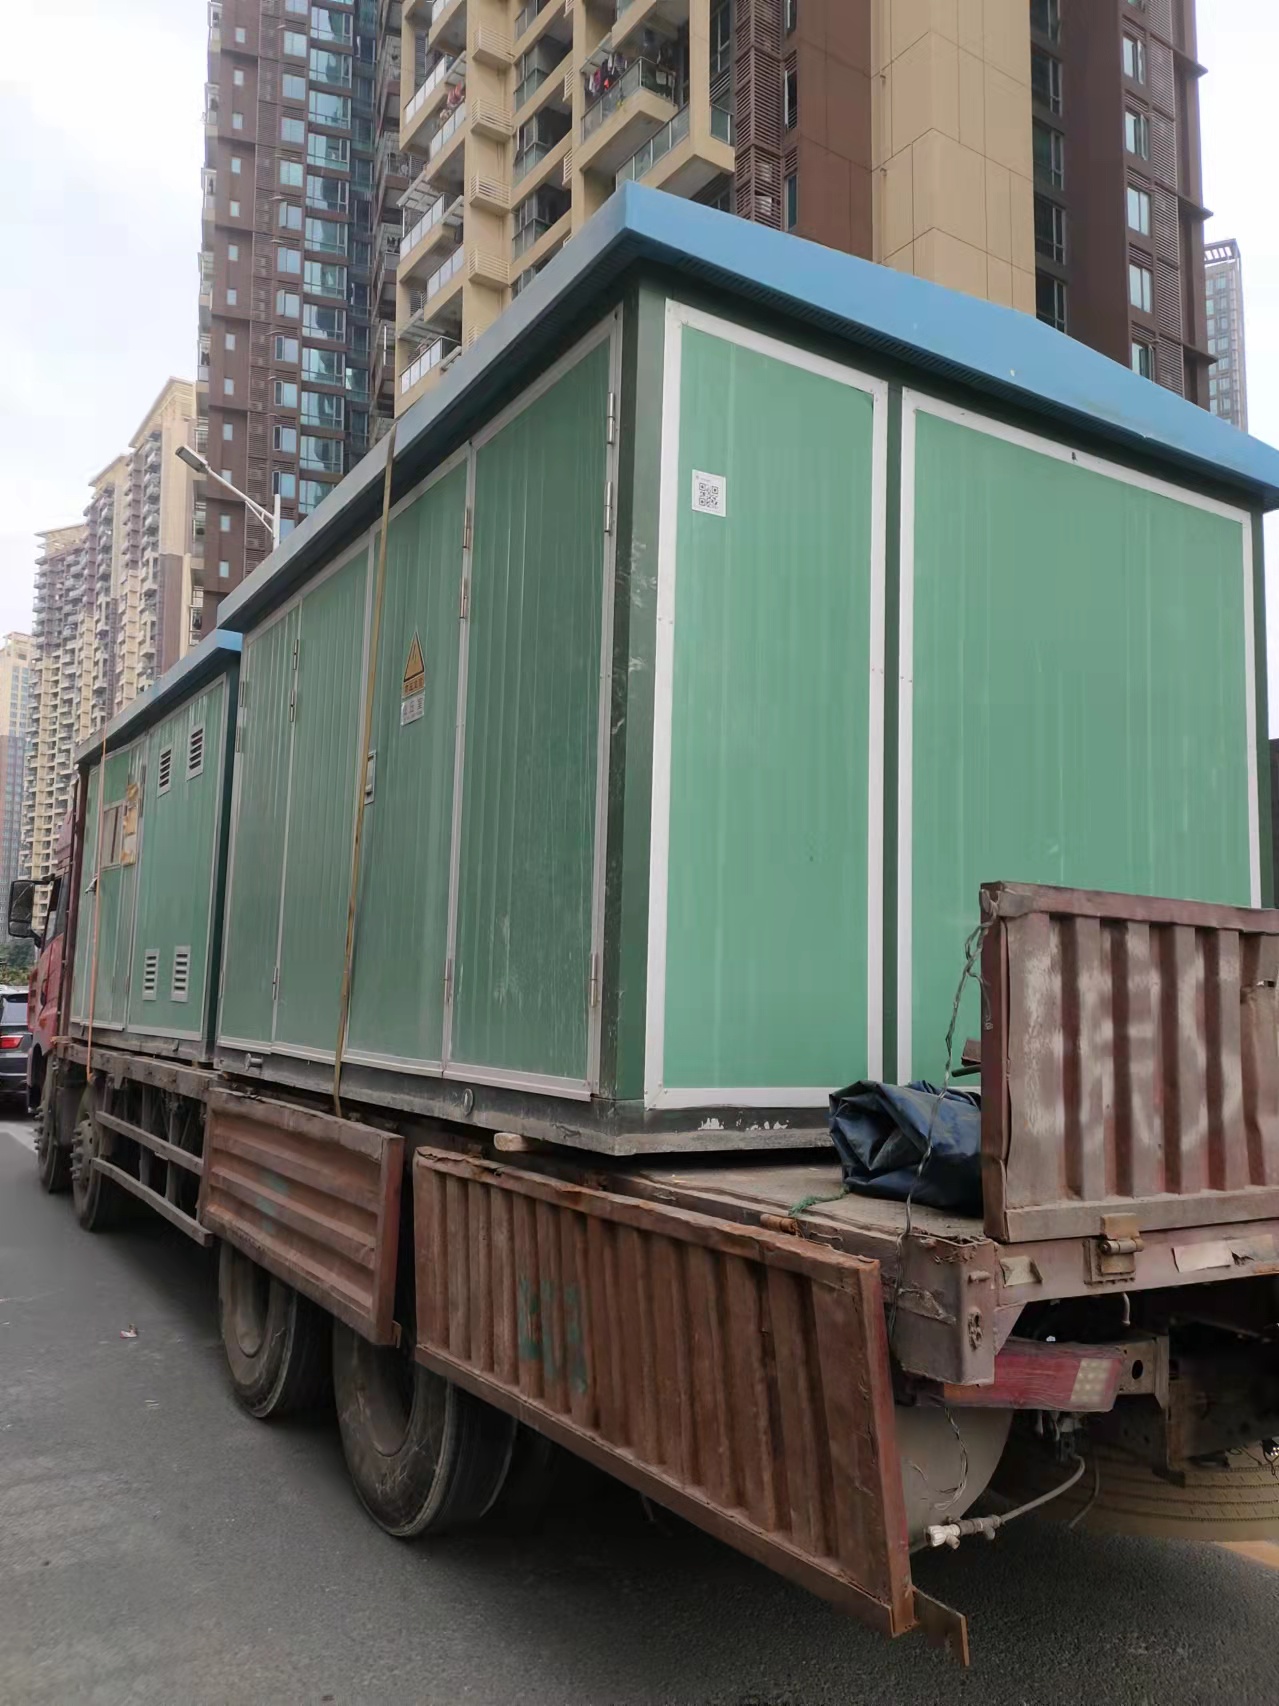 深圳大鹏区高压配电室拆除整套电力设备回收供应商